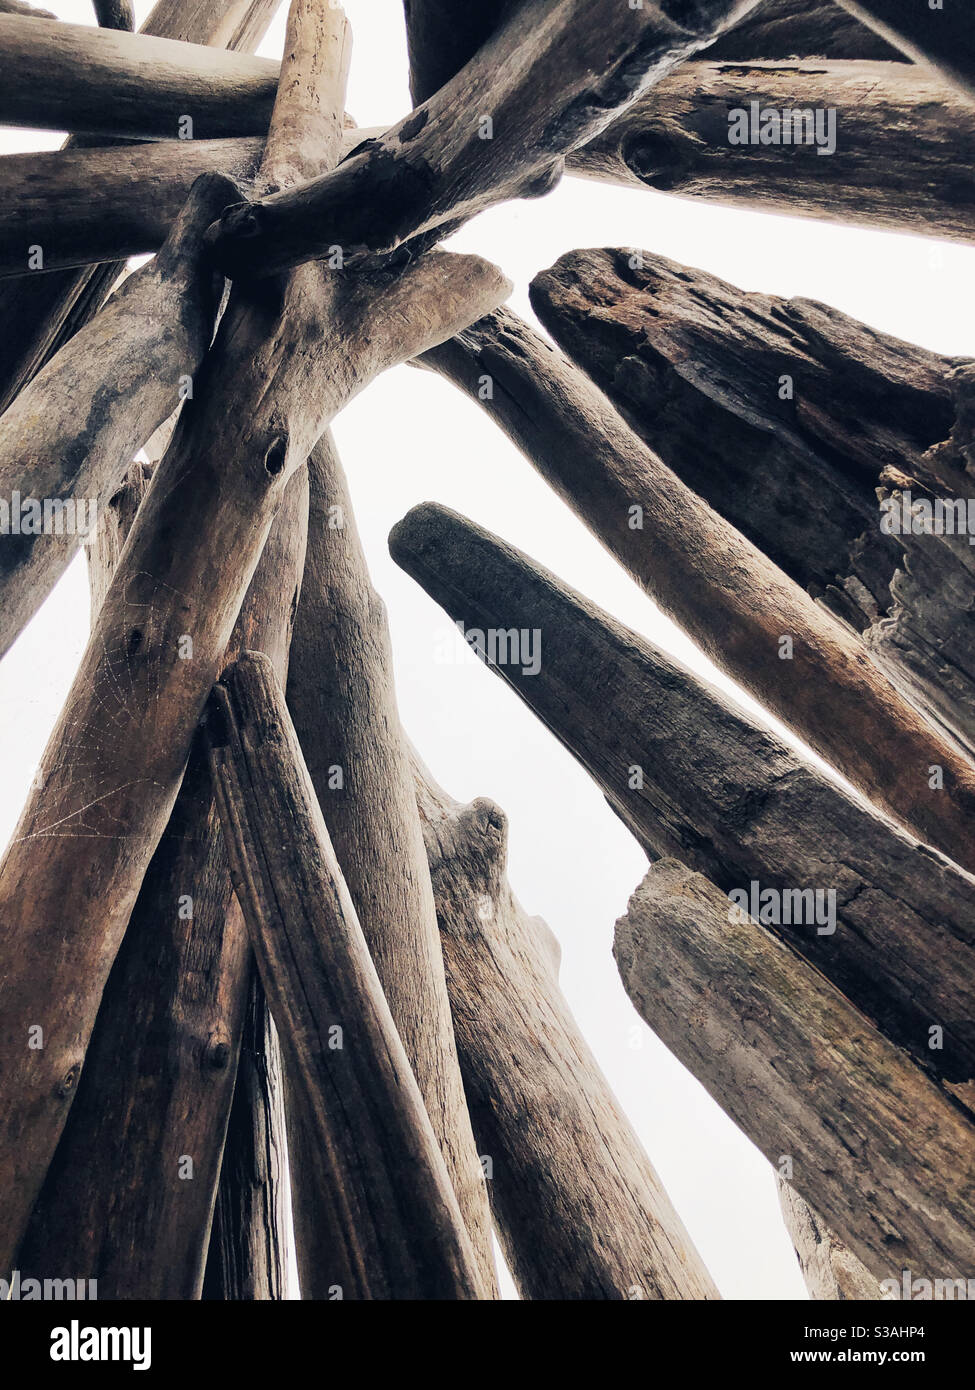 À l'intérieur de la structure de bois flotté sur une plage Banque D'Images